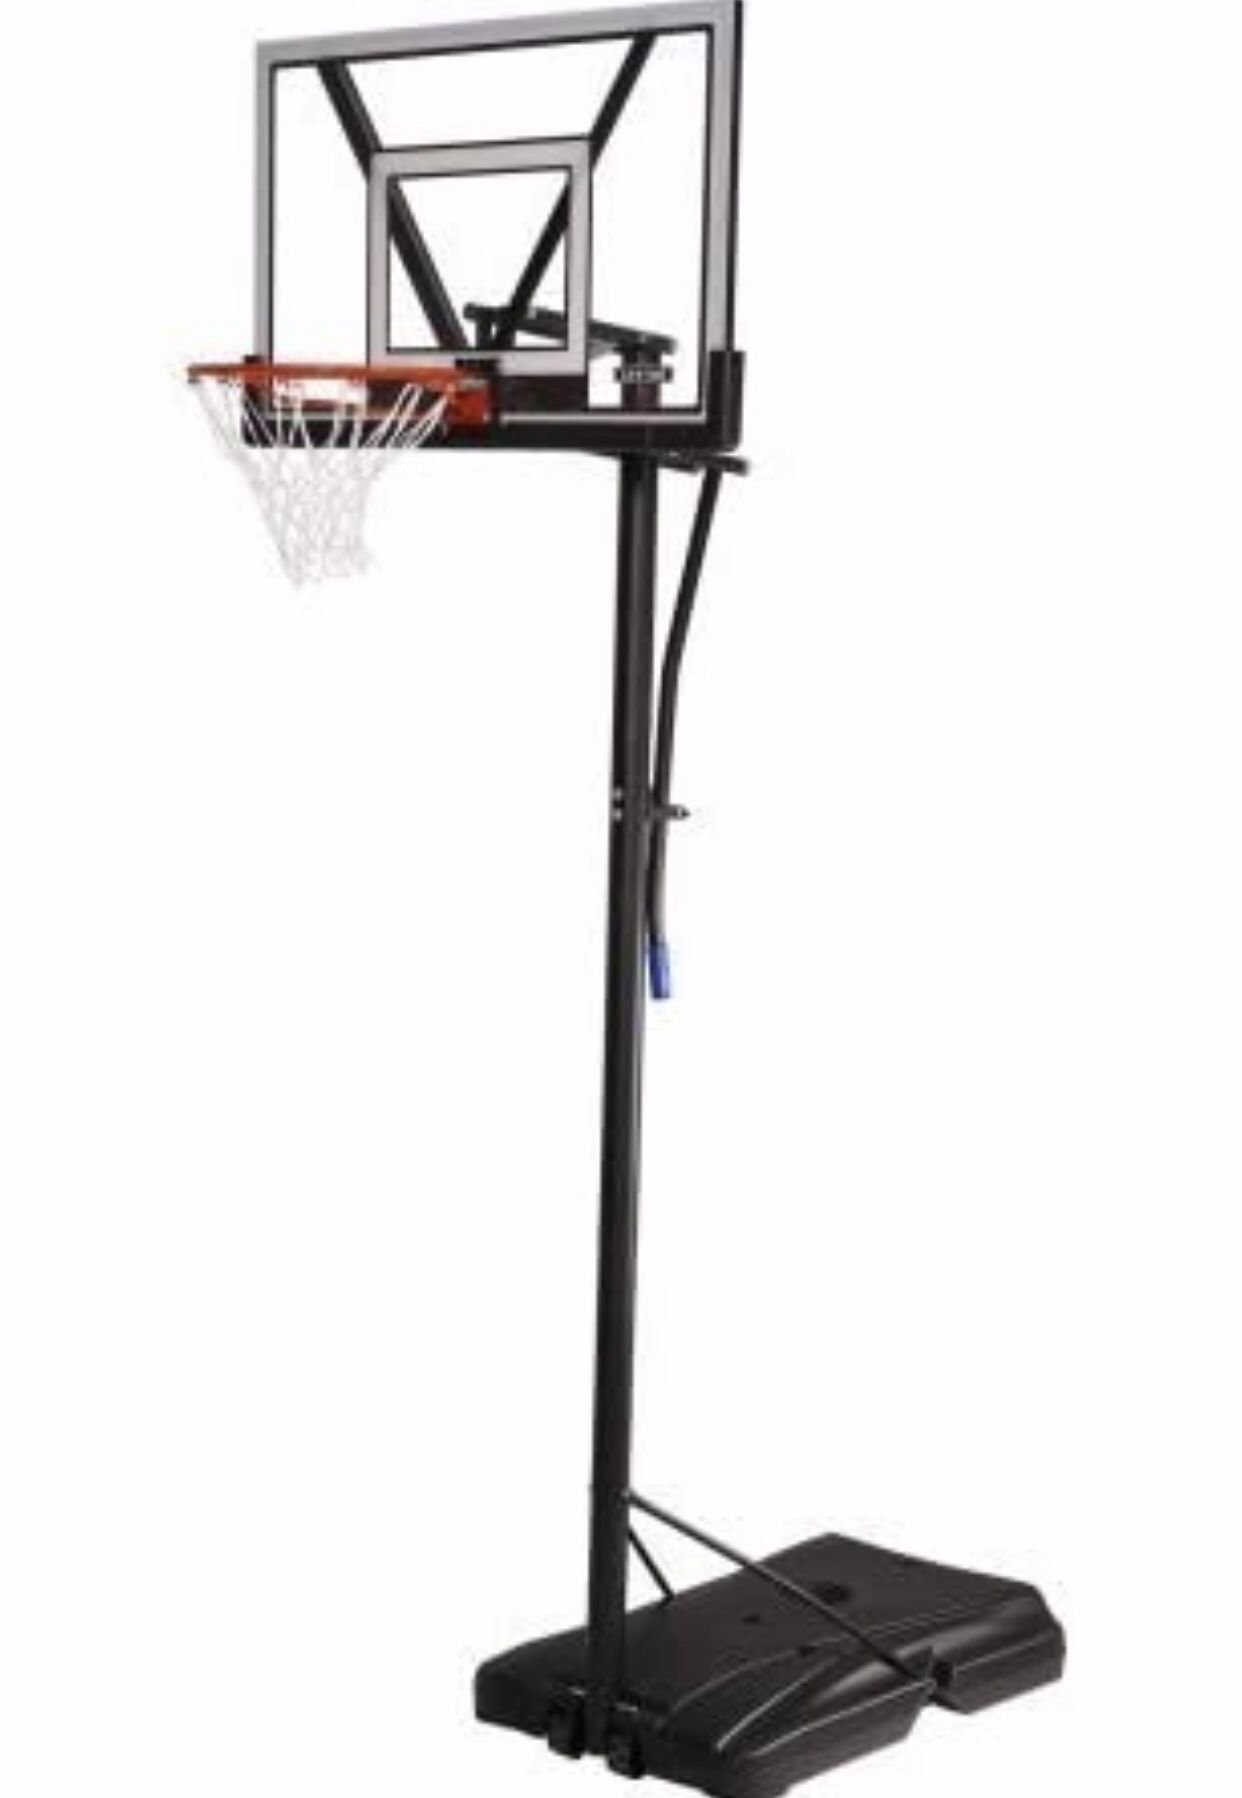 Lifetime Adjustable Portable Basketball Hoop 48" Backboard w/ V-Frame